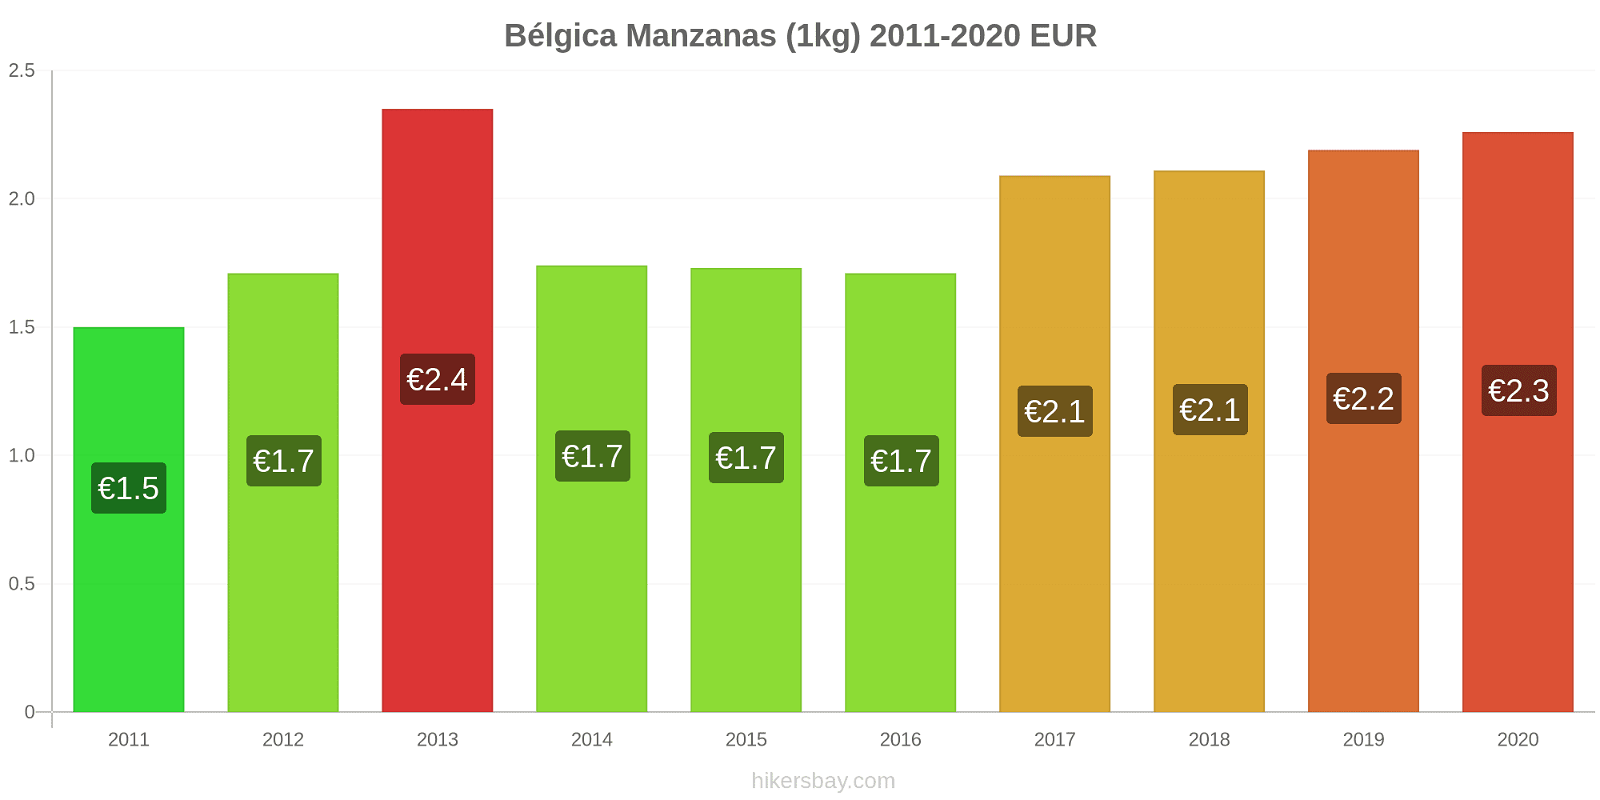 Bélgica cambios de precios Manzanas (1kg) hikersbay.com